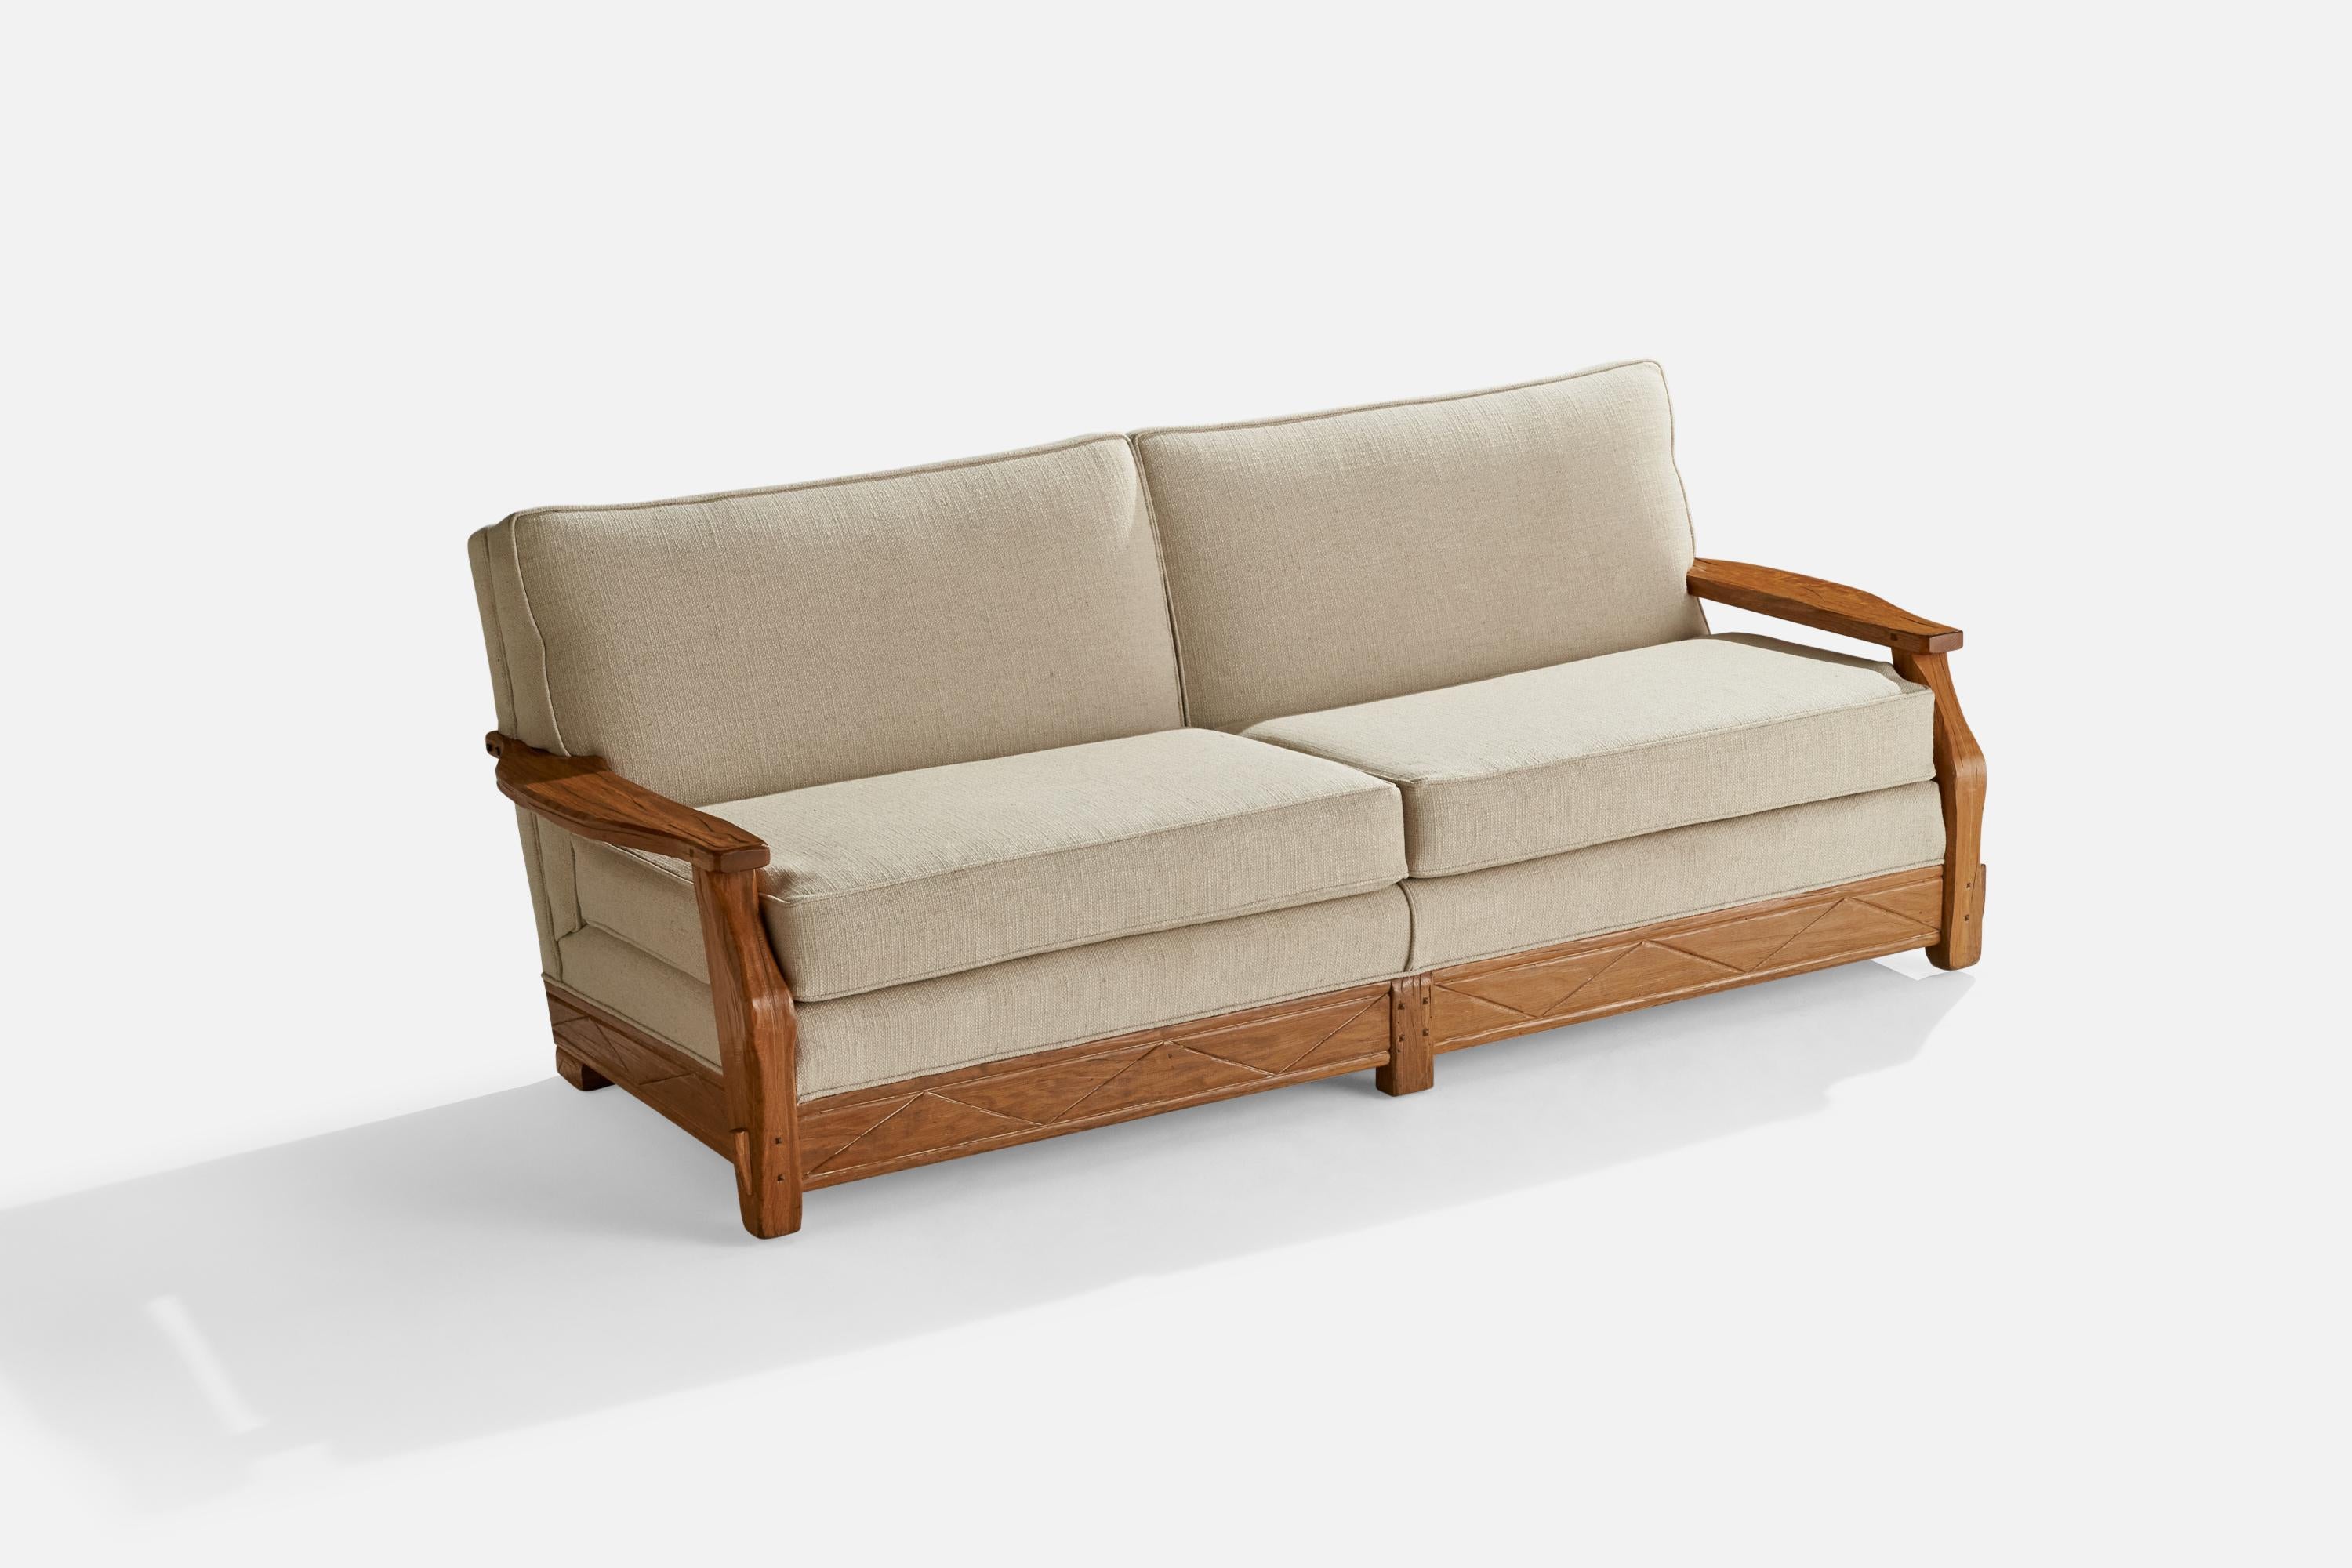 Canapé en chêne et tissu blanc cassé conçu et produit par A.I.Brandt Ranch Oak, États-Unis, vers les années 1950.

Hauteur d'assise 18